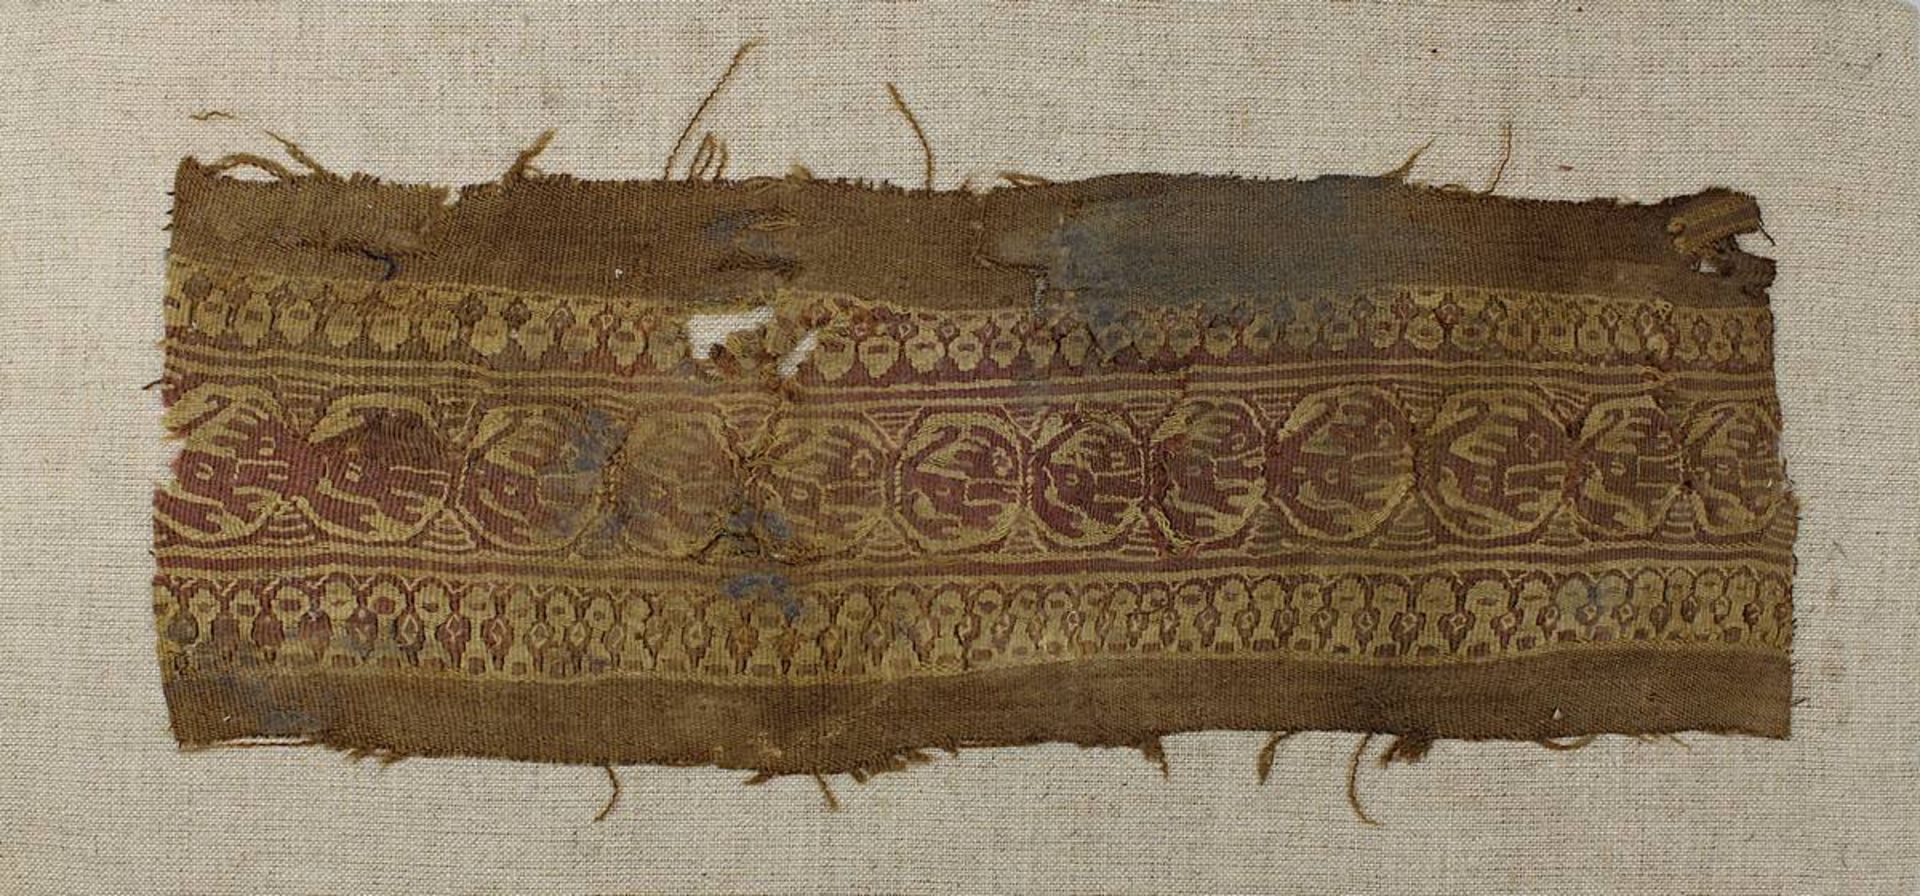 Koptisches Textilfragment, Ägypten wohl 3.-8. Jh., Leinen/Wolle, Fragment eines Zierstreifens, in